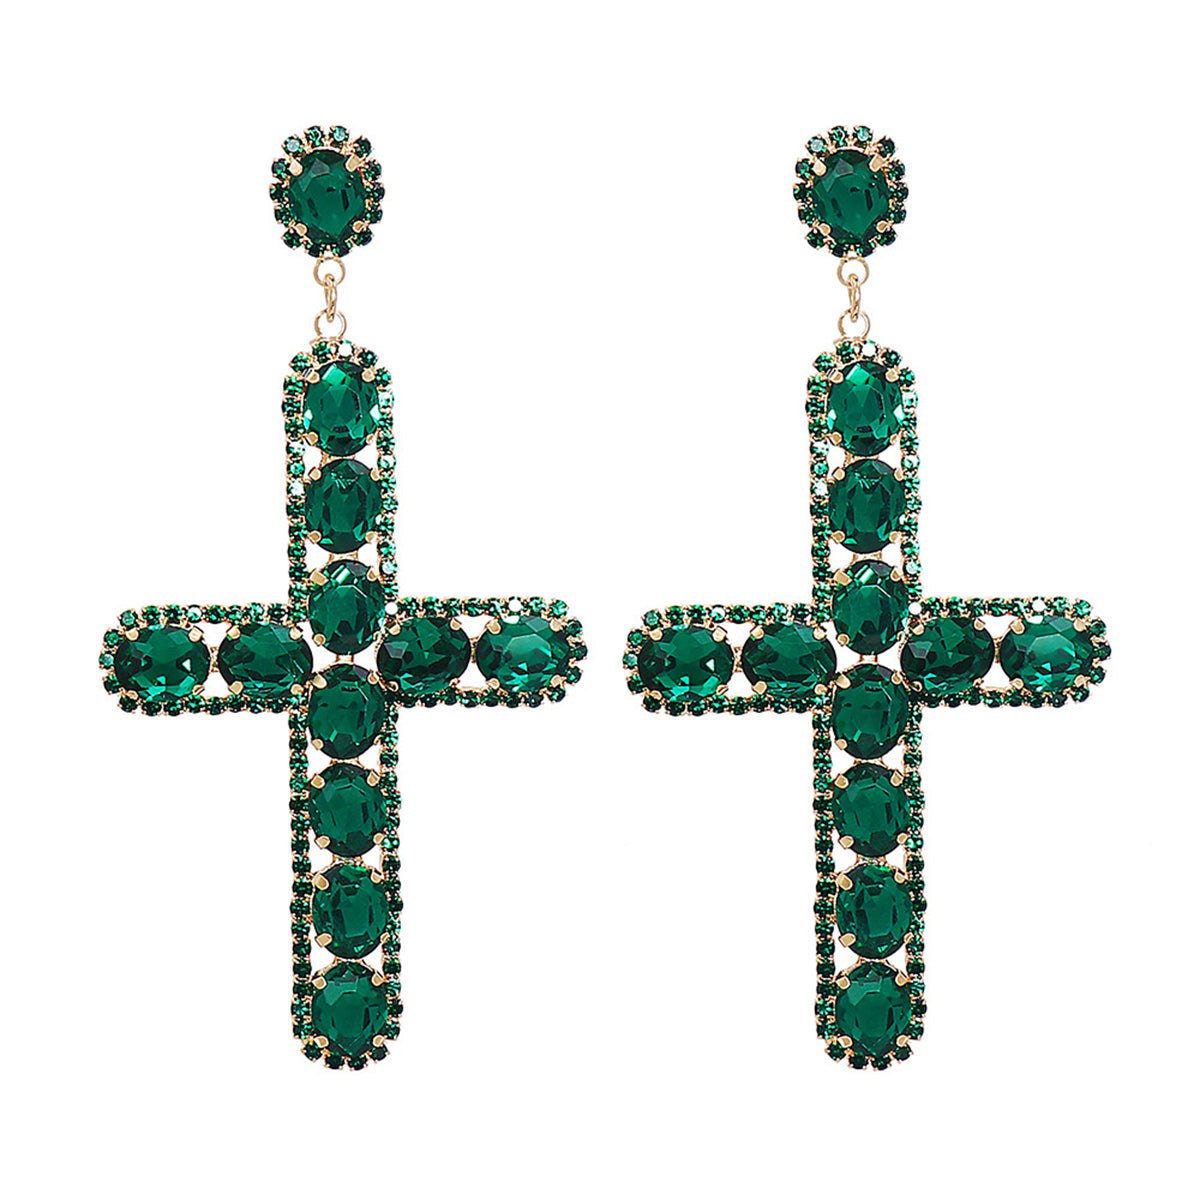 Green Crystal & Cubic Zirconia Cross Drop Earrings